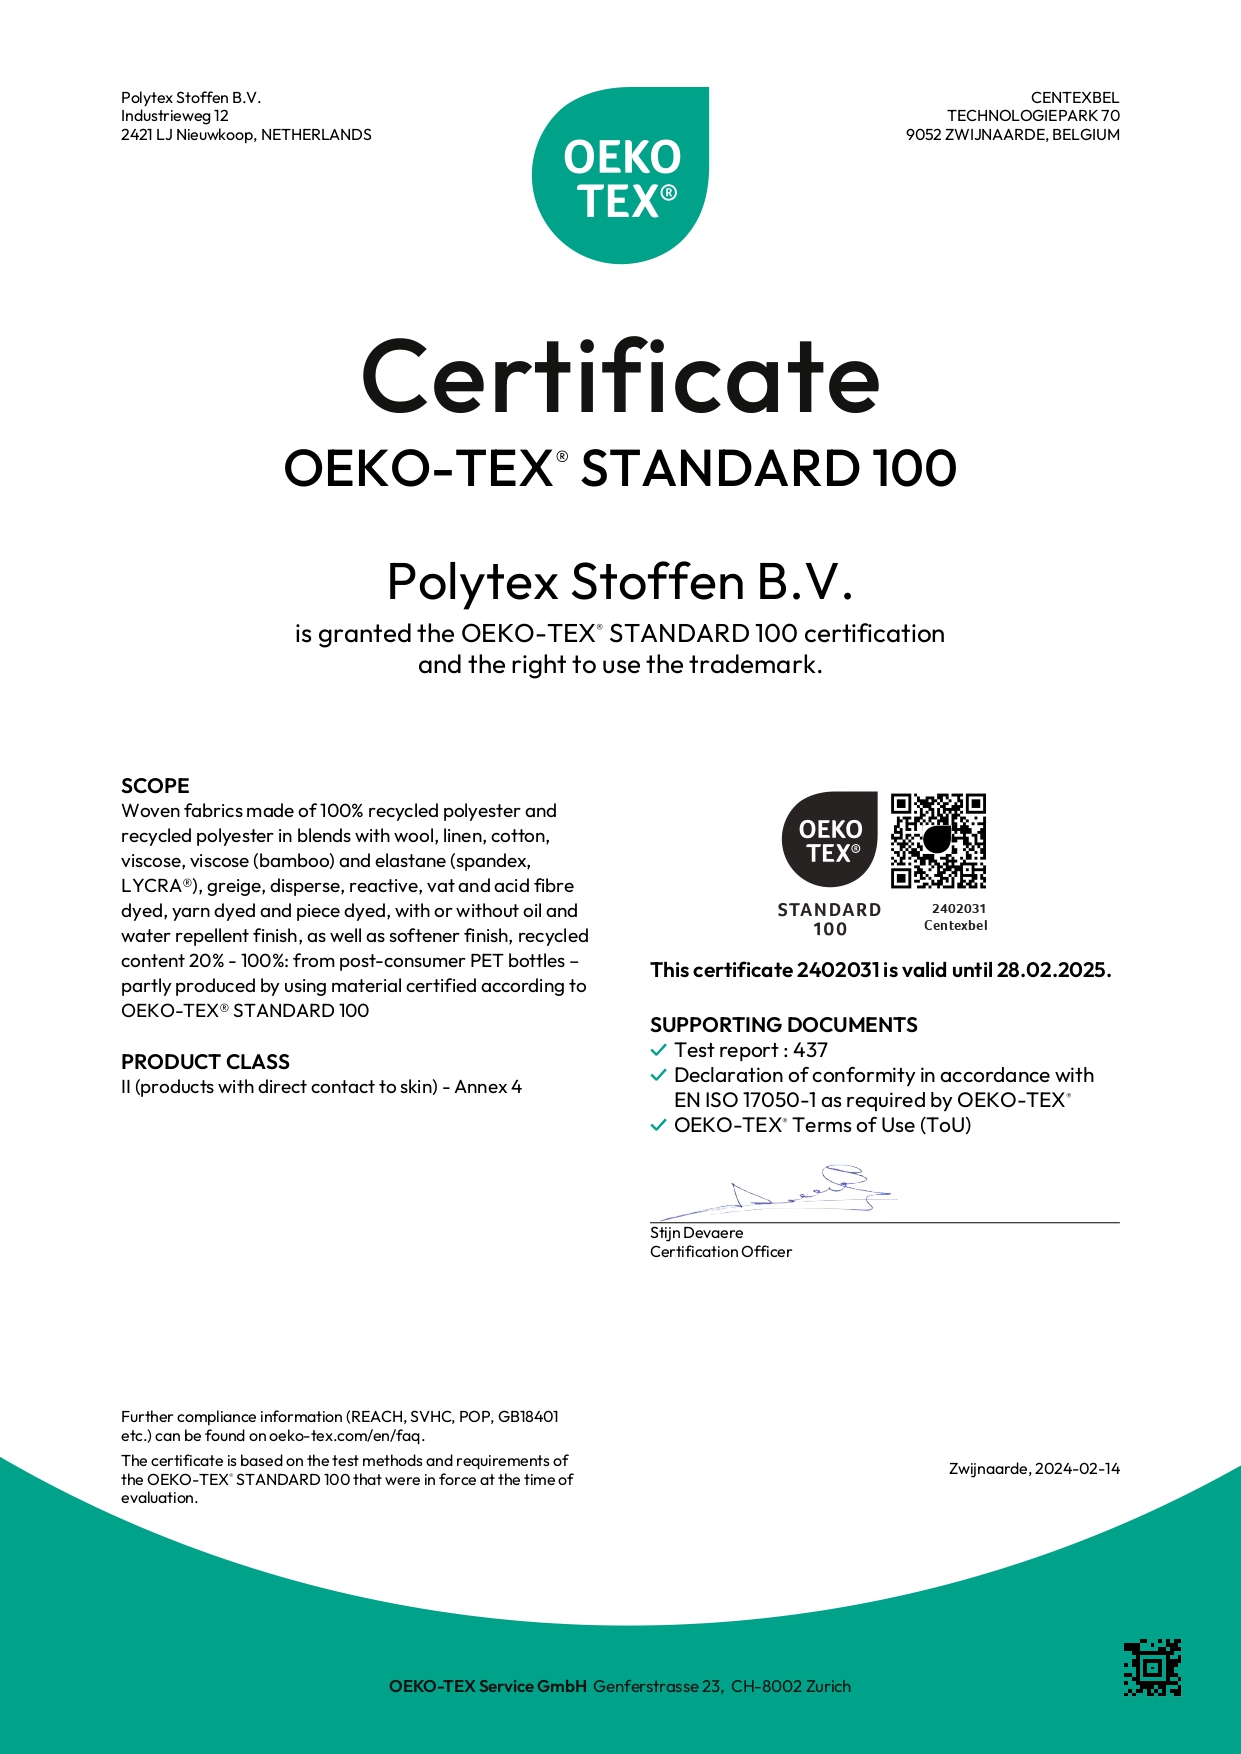 Certificate OEKO tex standaard 100 Polytex Stoffen.jpg